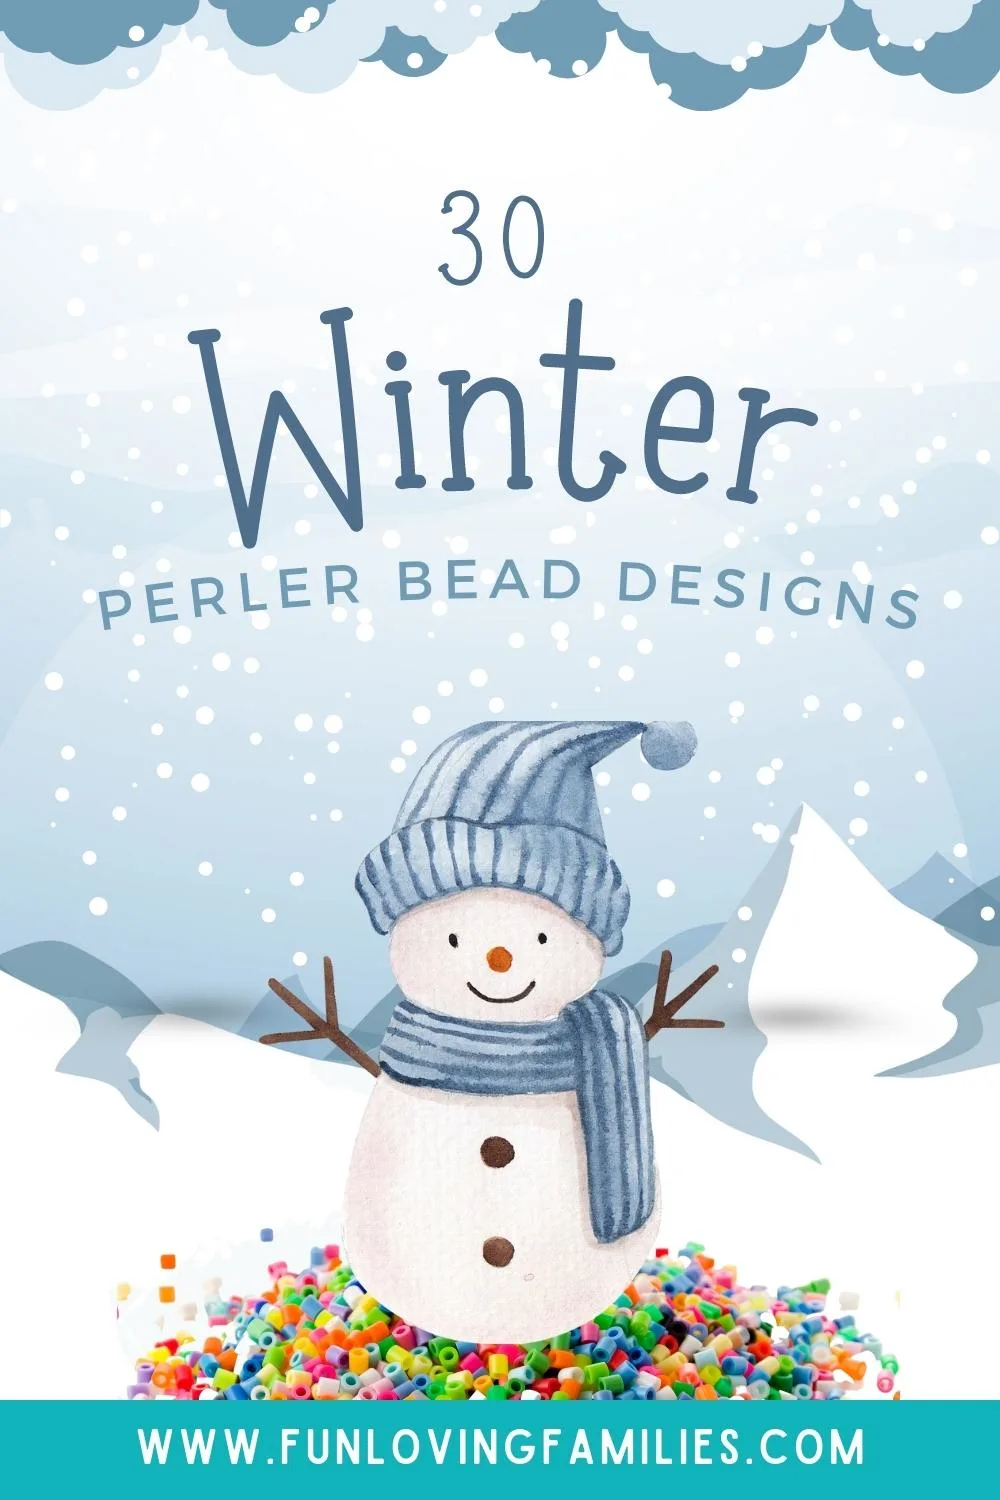 Winter perler bead designs pin image